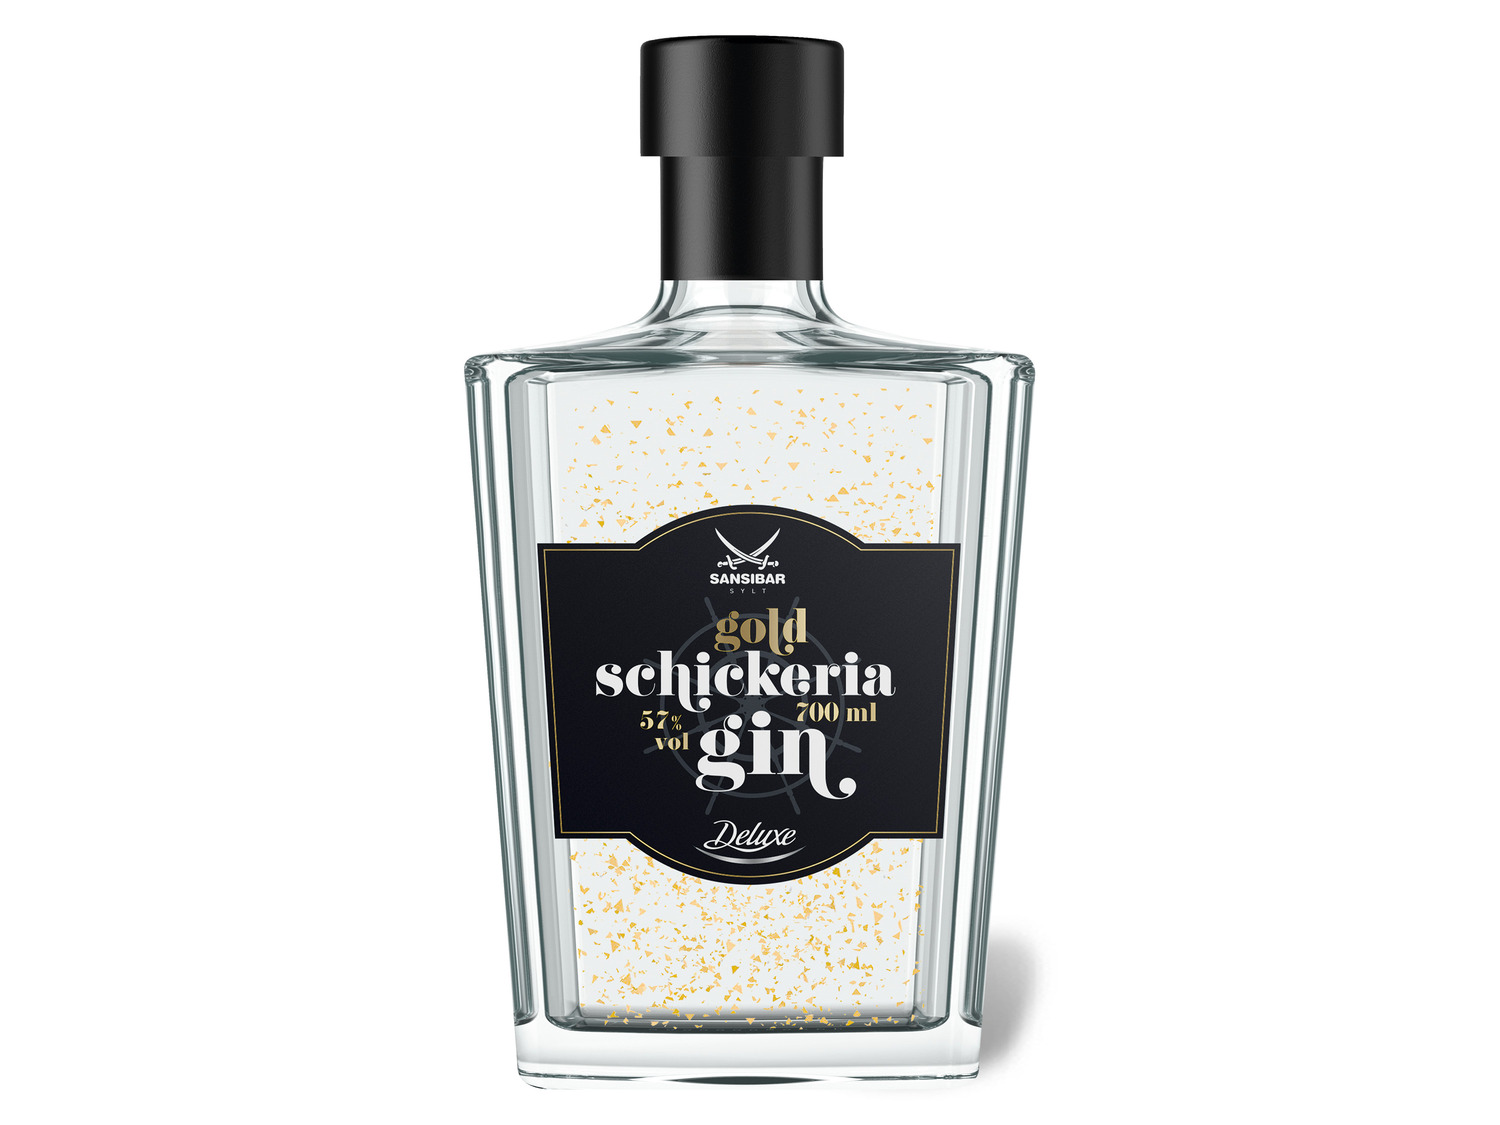 Sansibar Deluxe Schickeria Gin Gold 57% Vol | LIDL